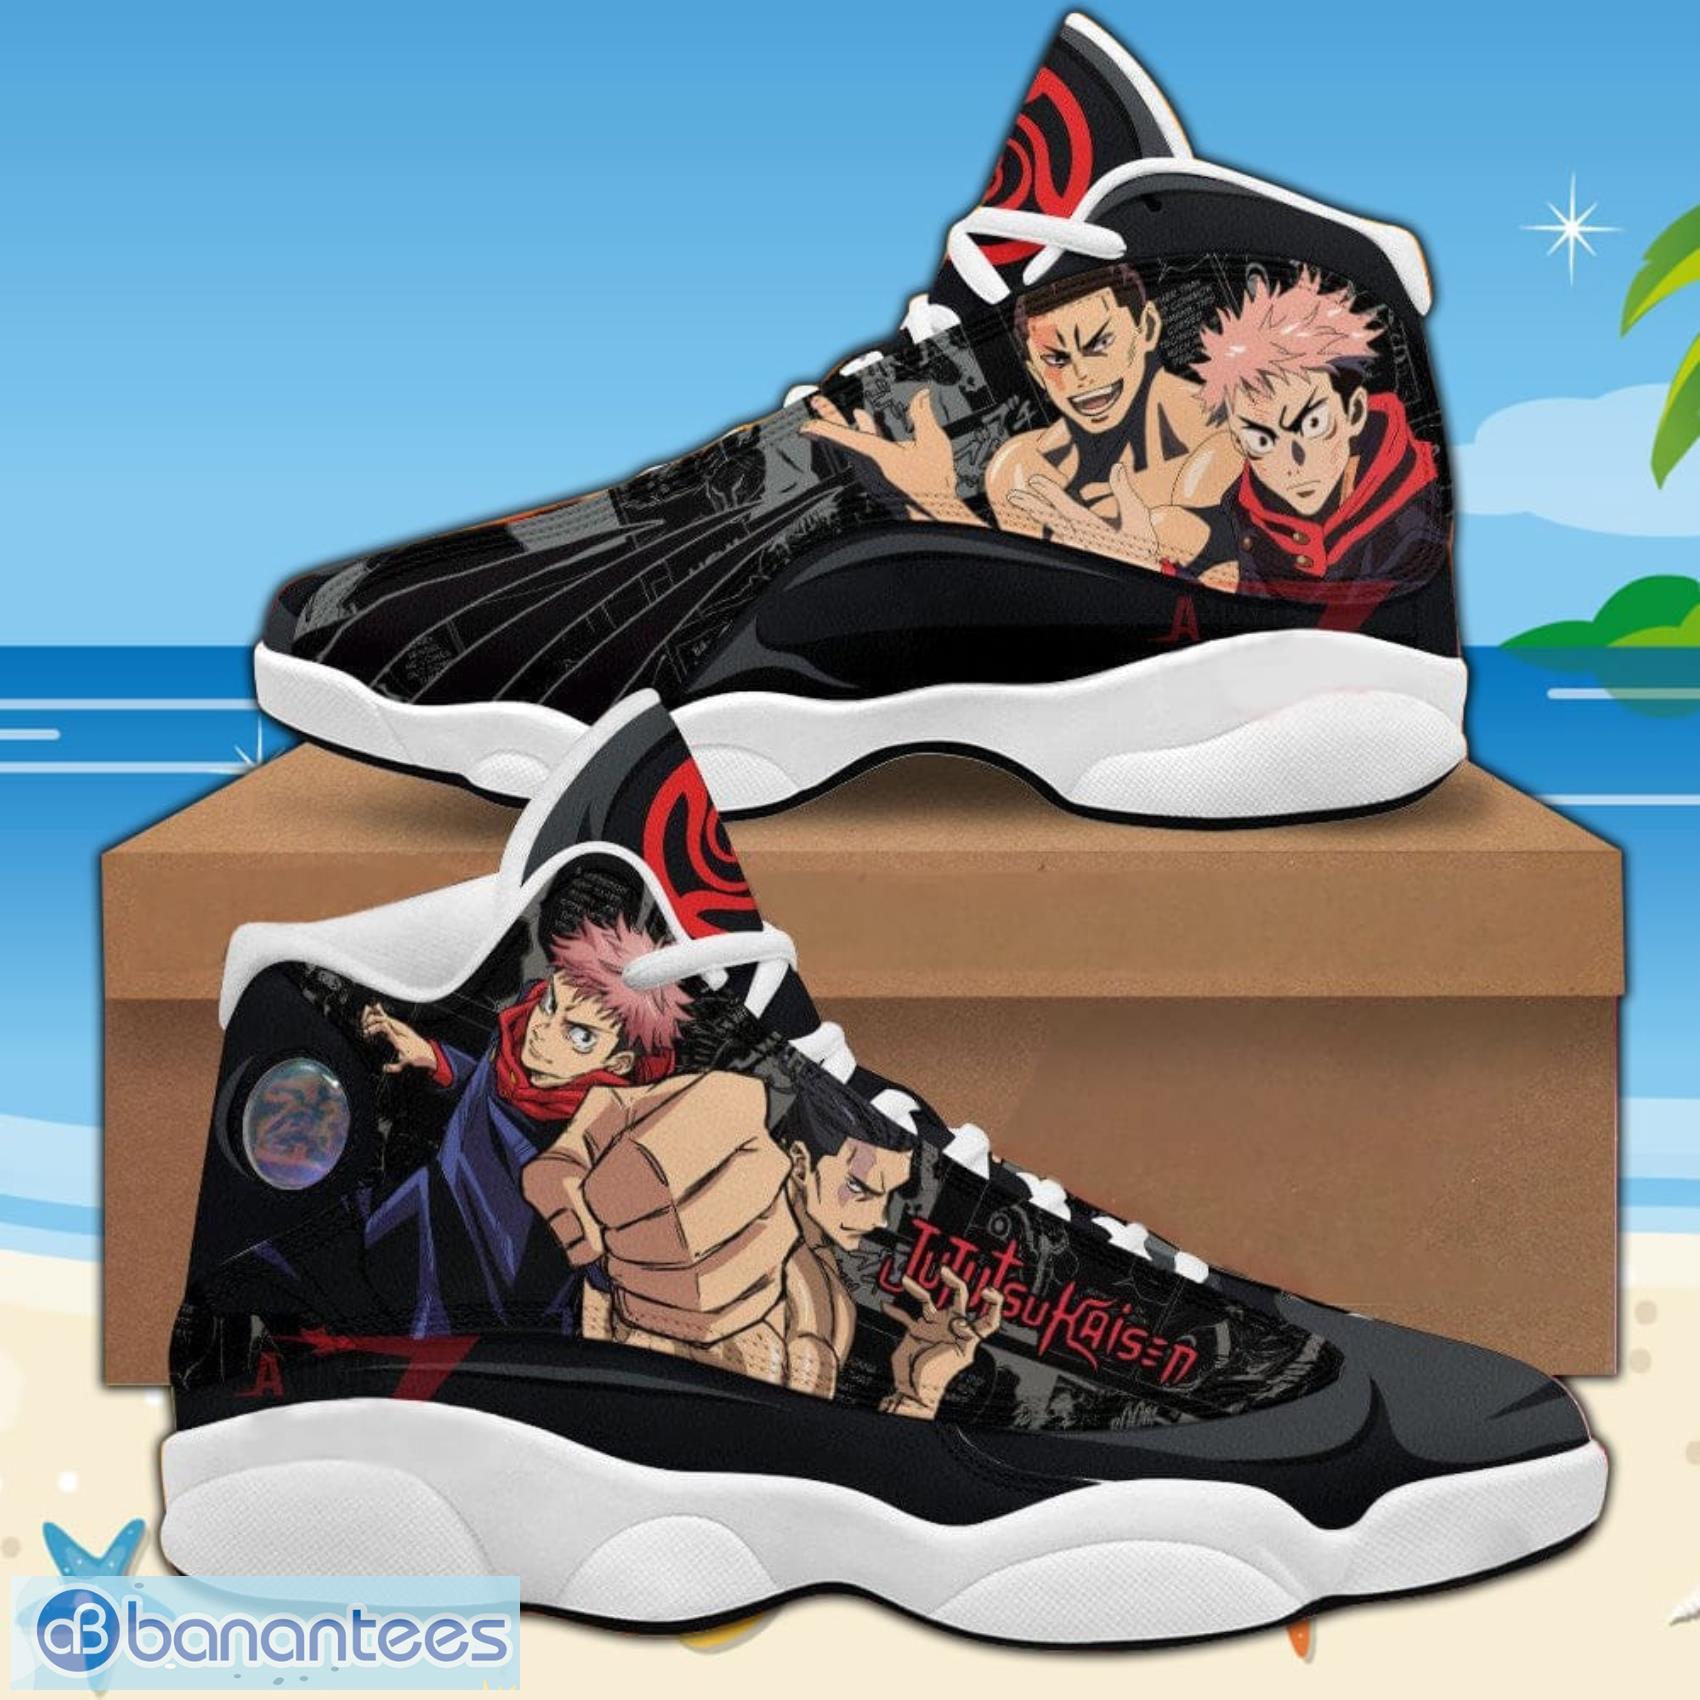 Kirito Anime Graffiti Calfskin Running Sneakers Luxurious High Top Designer  High Top Casual Sneakers For Men And Women MN2102 Box EU 36 48 From  Fashionshoesgz18, $46.87 | DHgate.Com